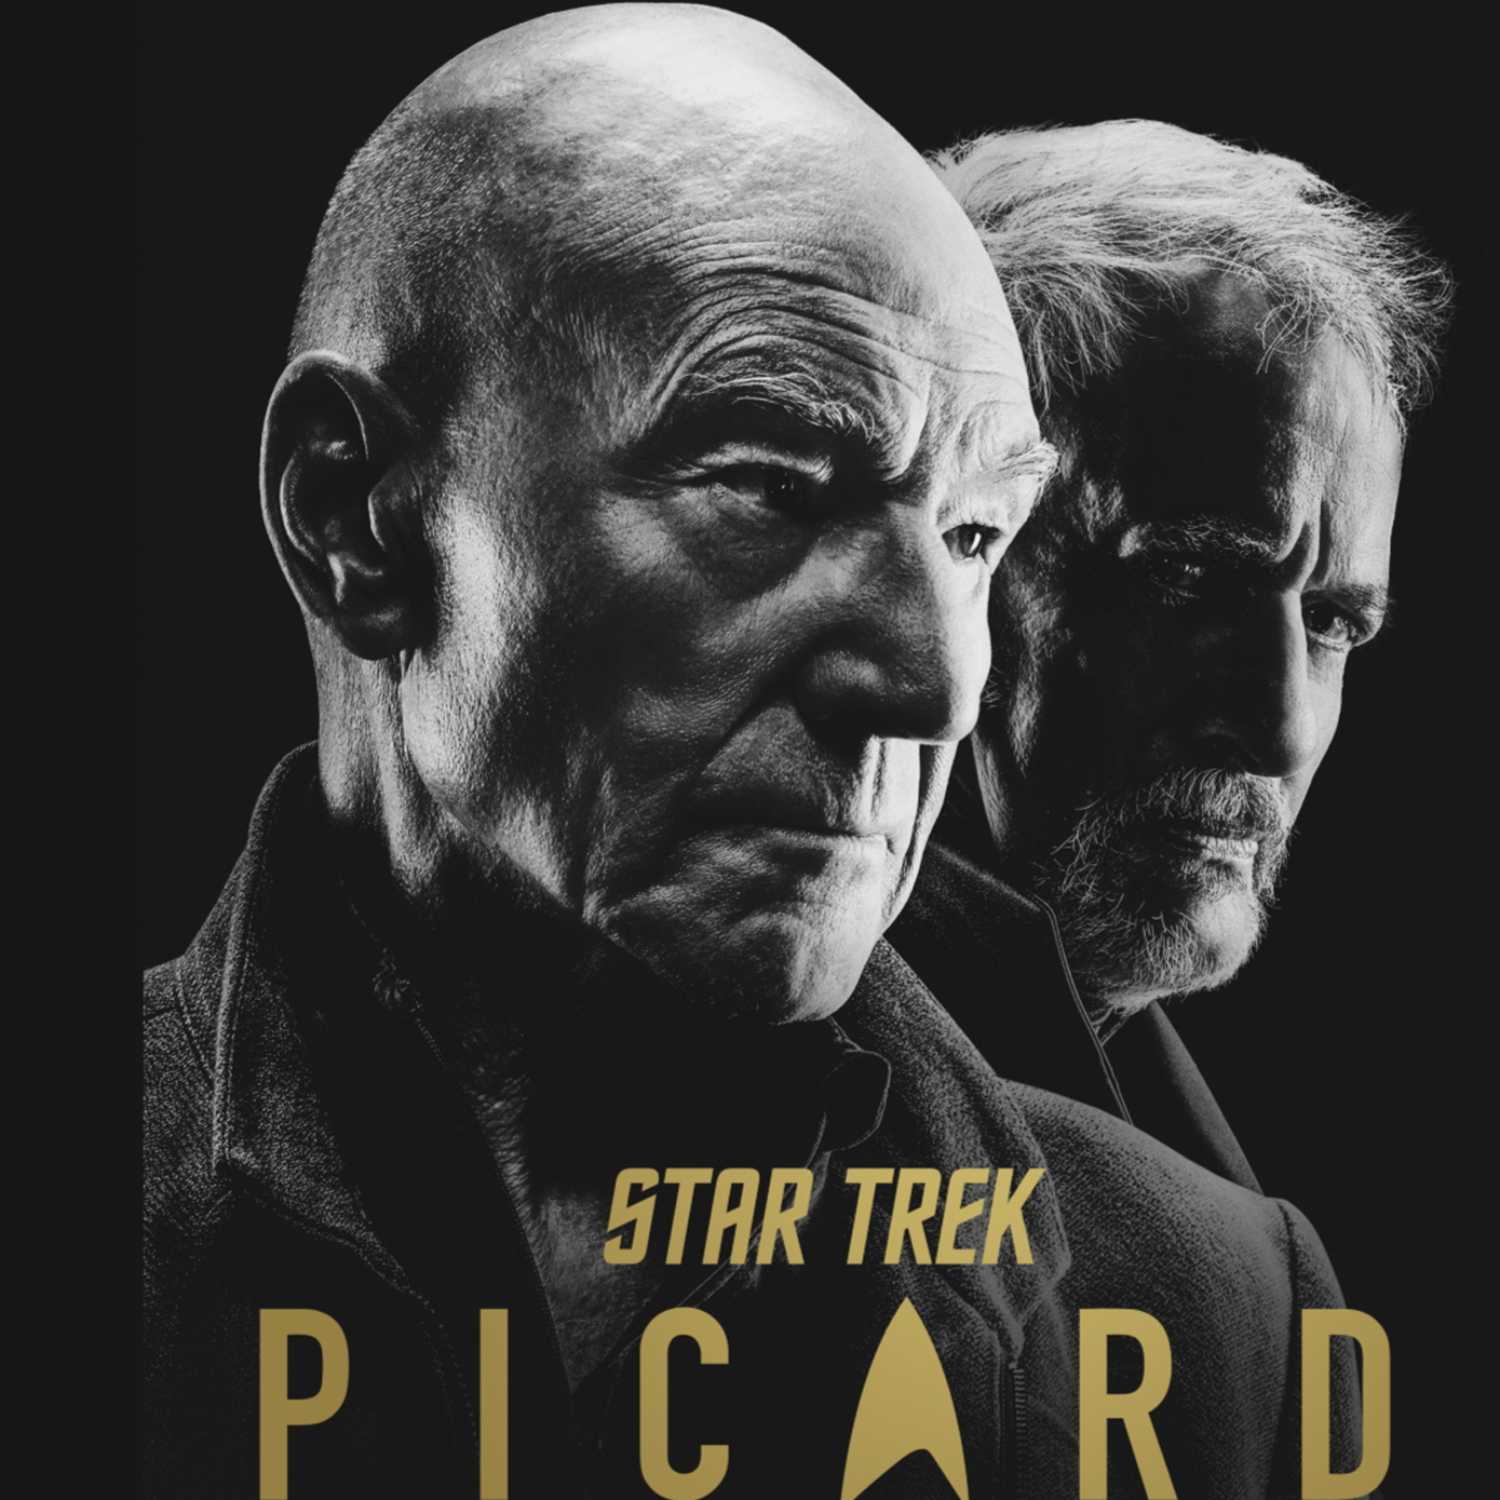 Bonus Episode: Star Trek Picard S2E5